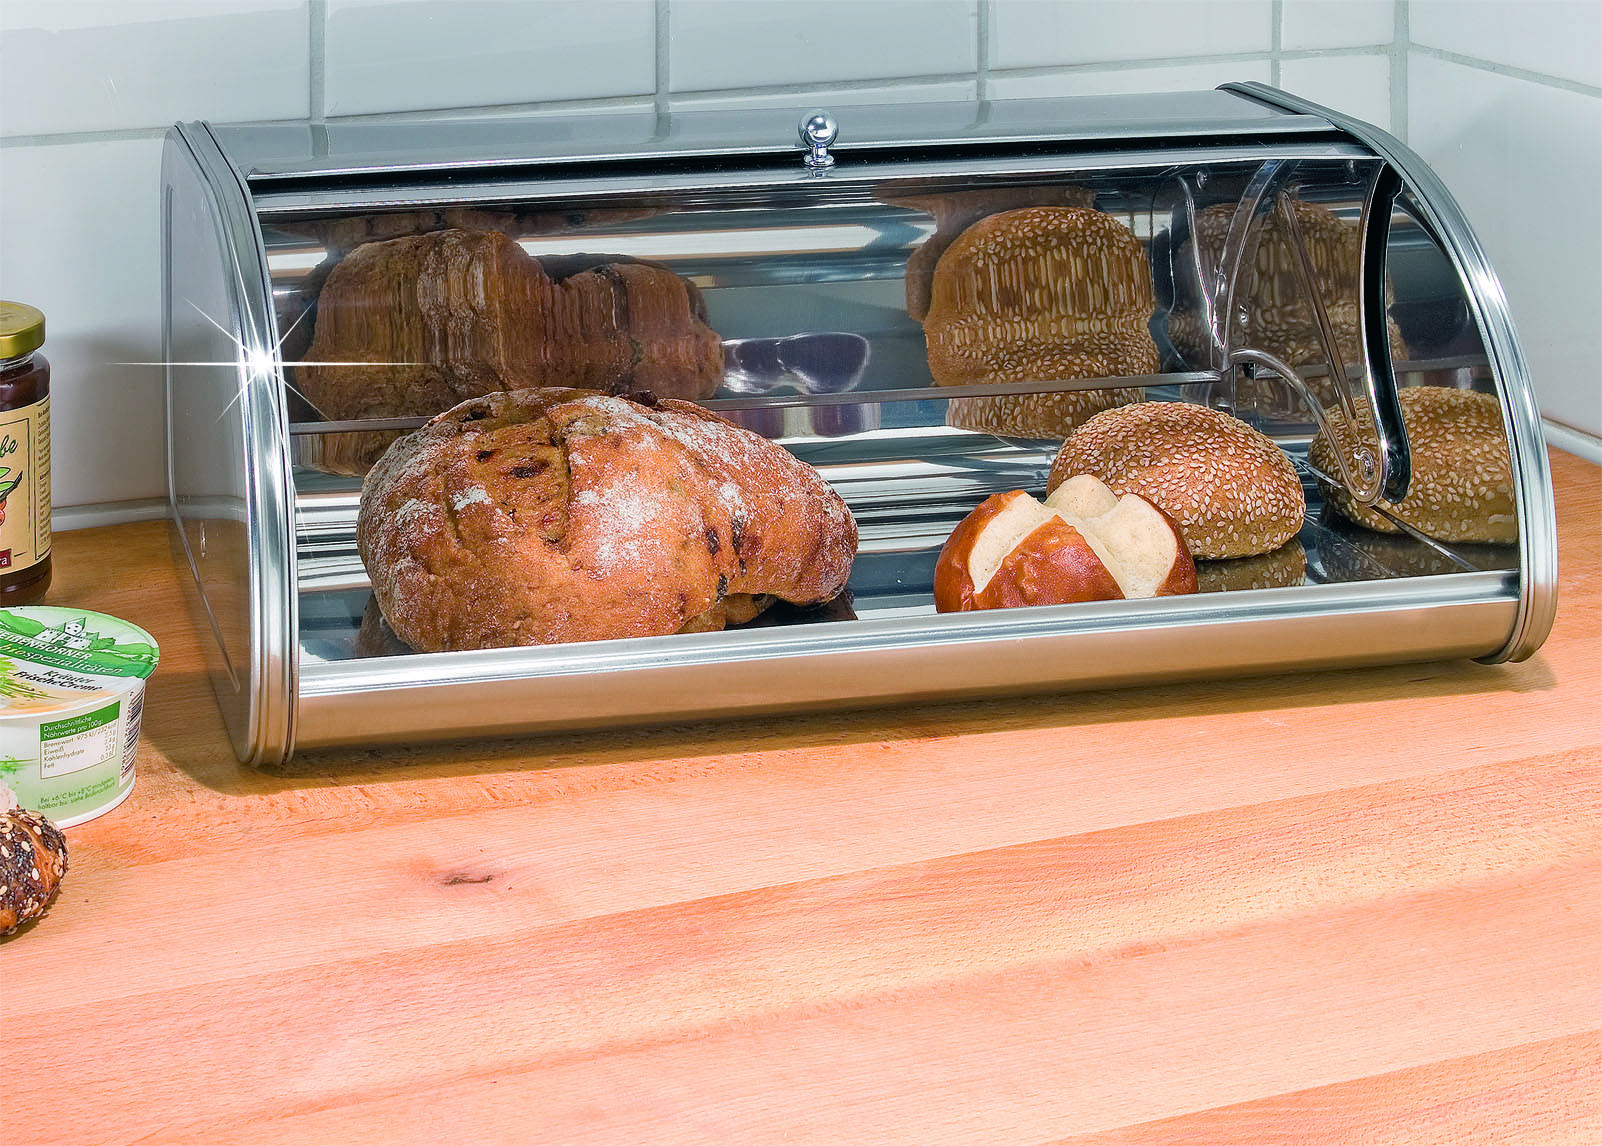 Правильное хранение хлеба в холодильнике и морозильной камере.